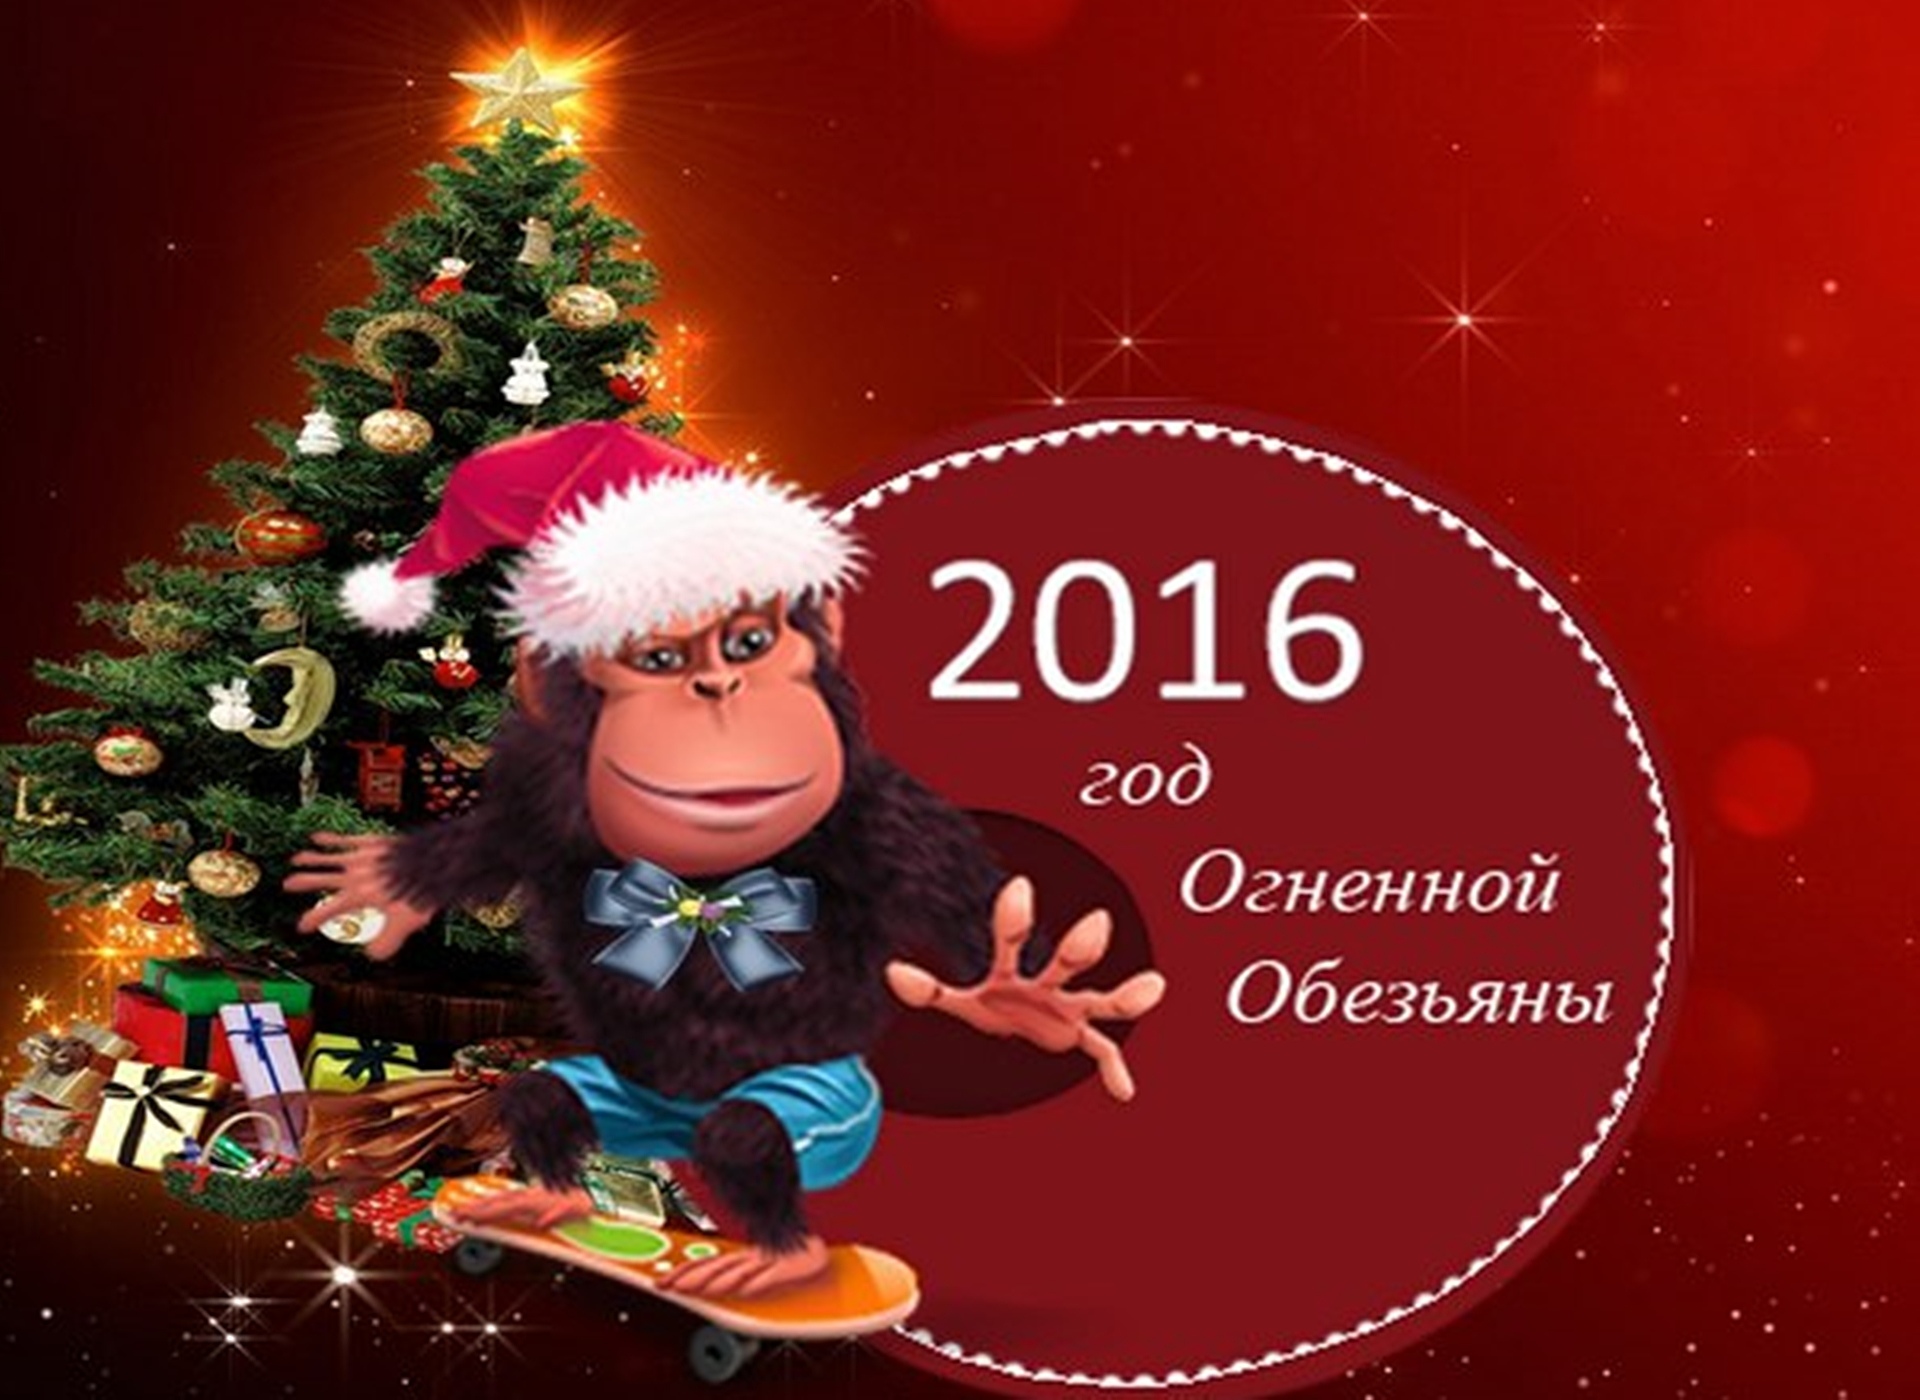 2015 год 2016 год темп. Новый 2016 год огненной обезьяны. С новым годом 2016. Открытки с новым годом 2016. Картинки на новый год 2016 обезьяны.